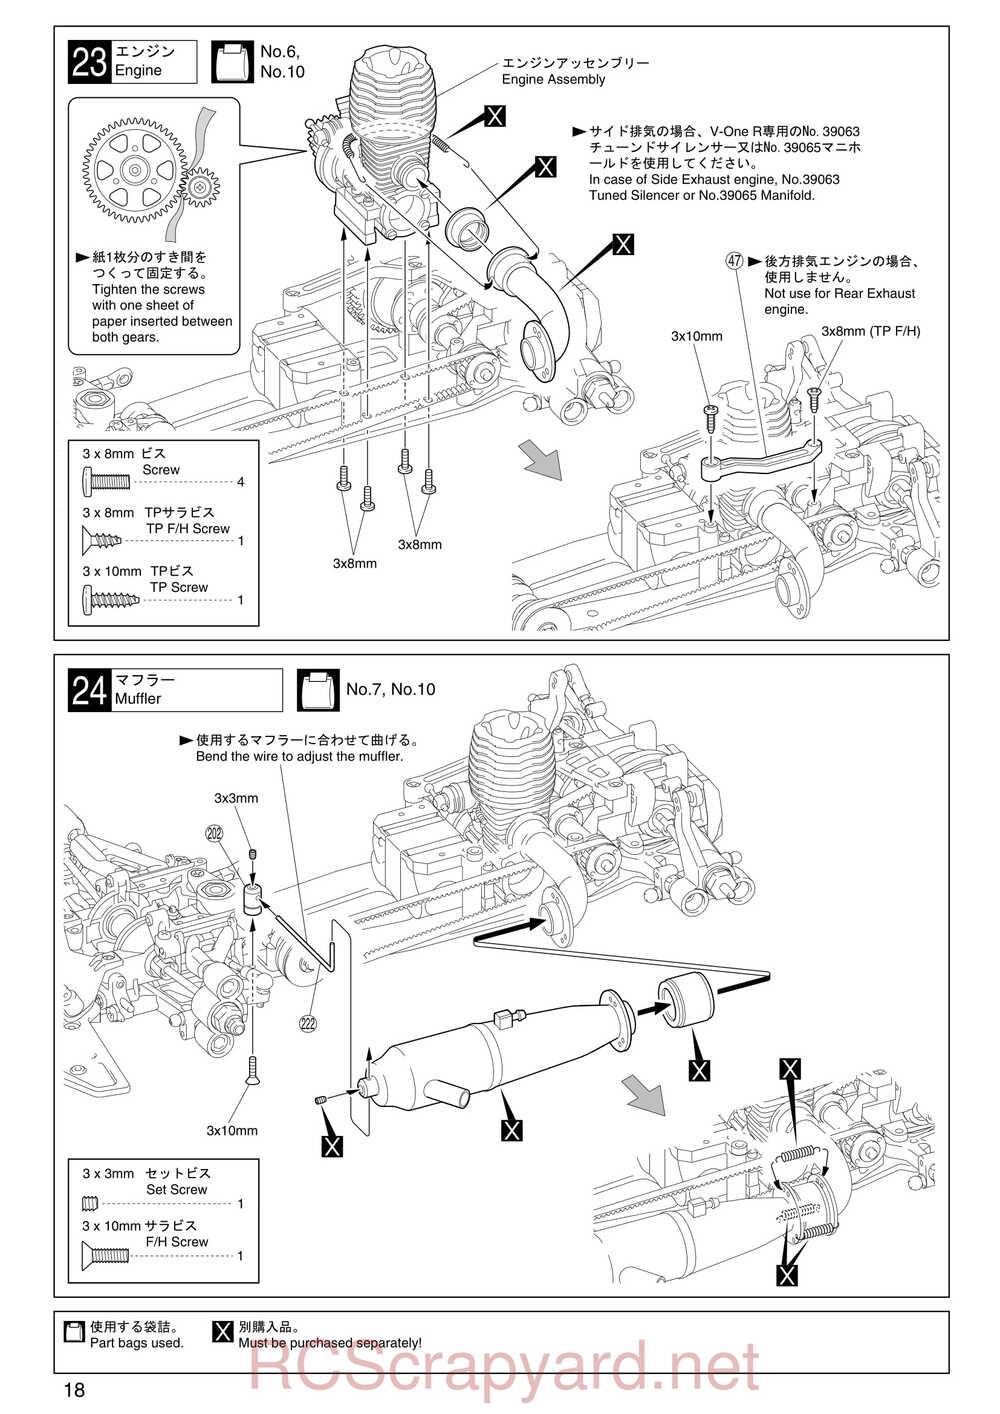 Kyosho - 31255 - V-One RR Evolution - Manual - Page 18